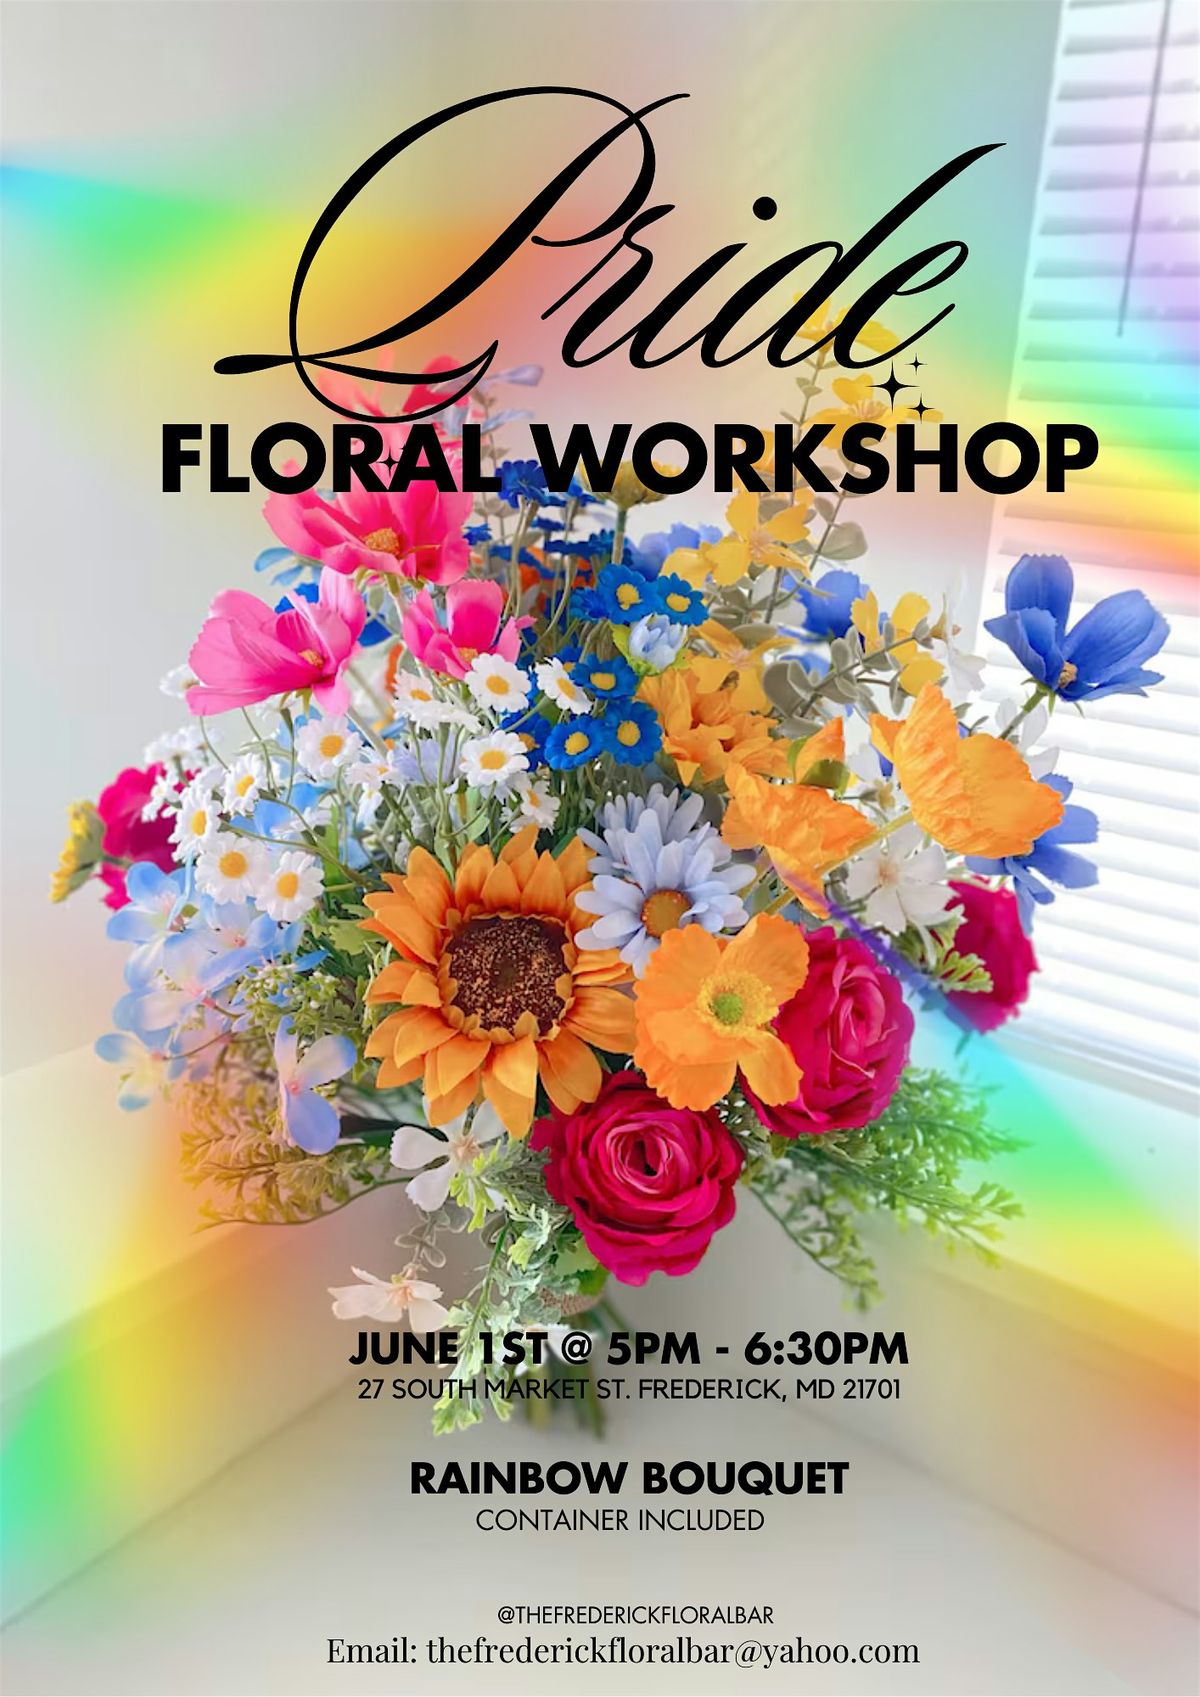 Pride Floral Workshop